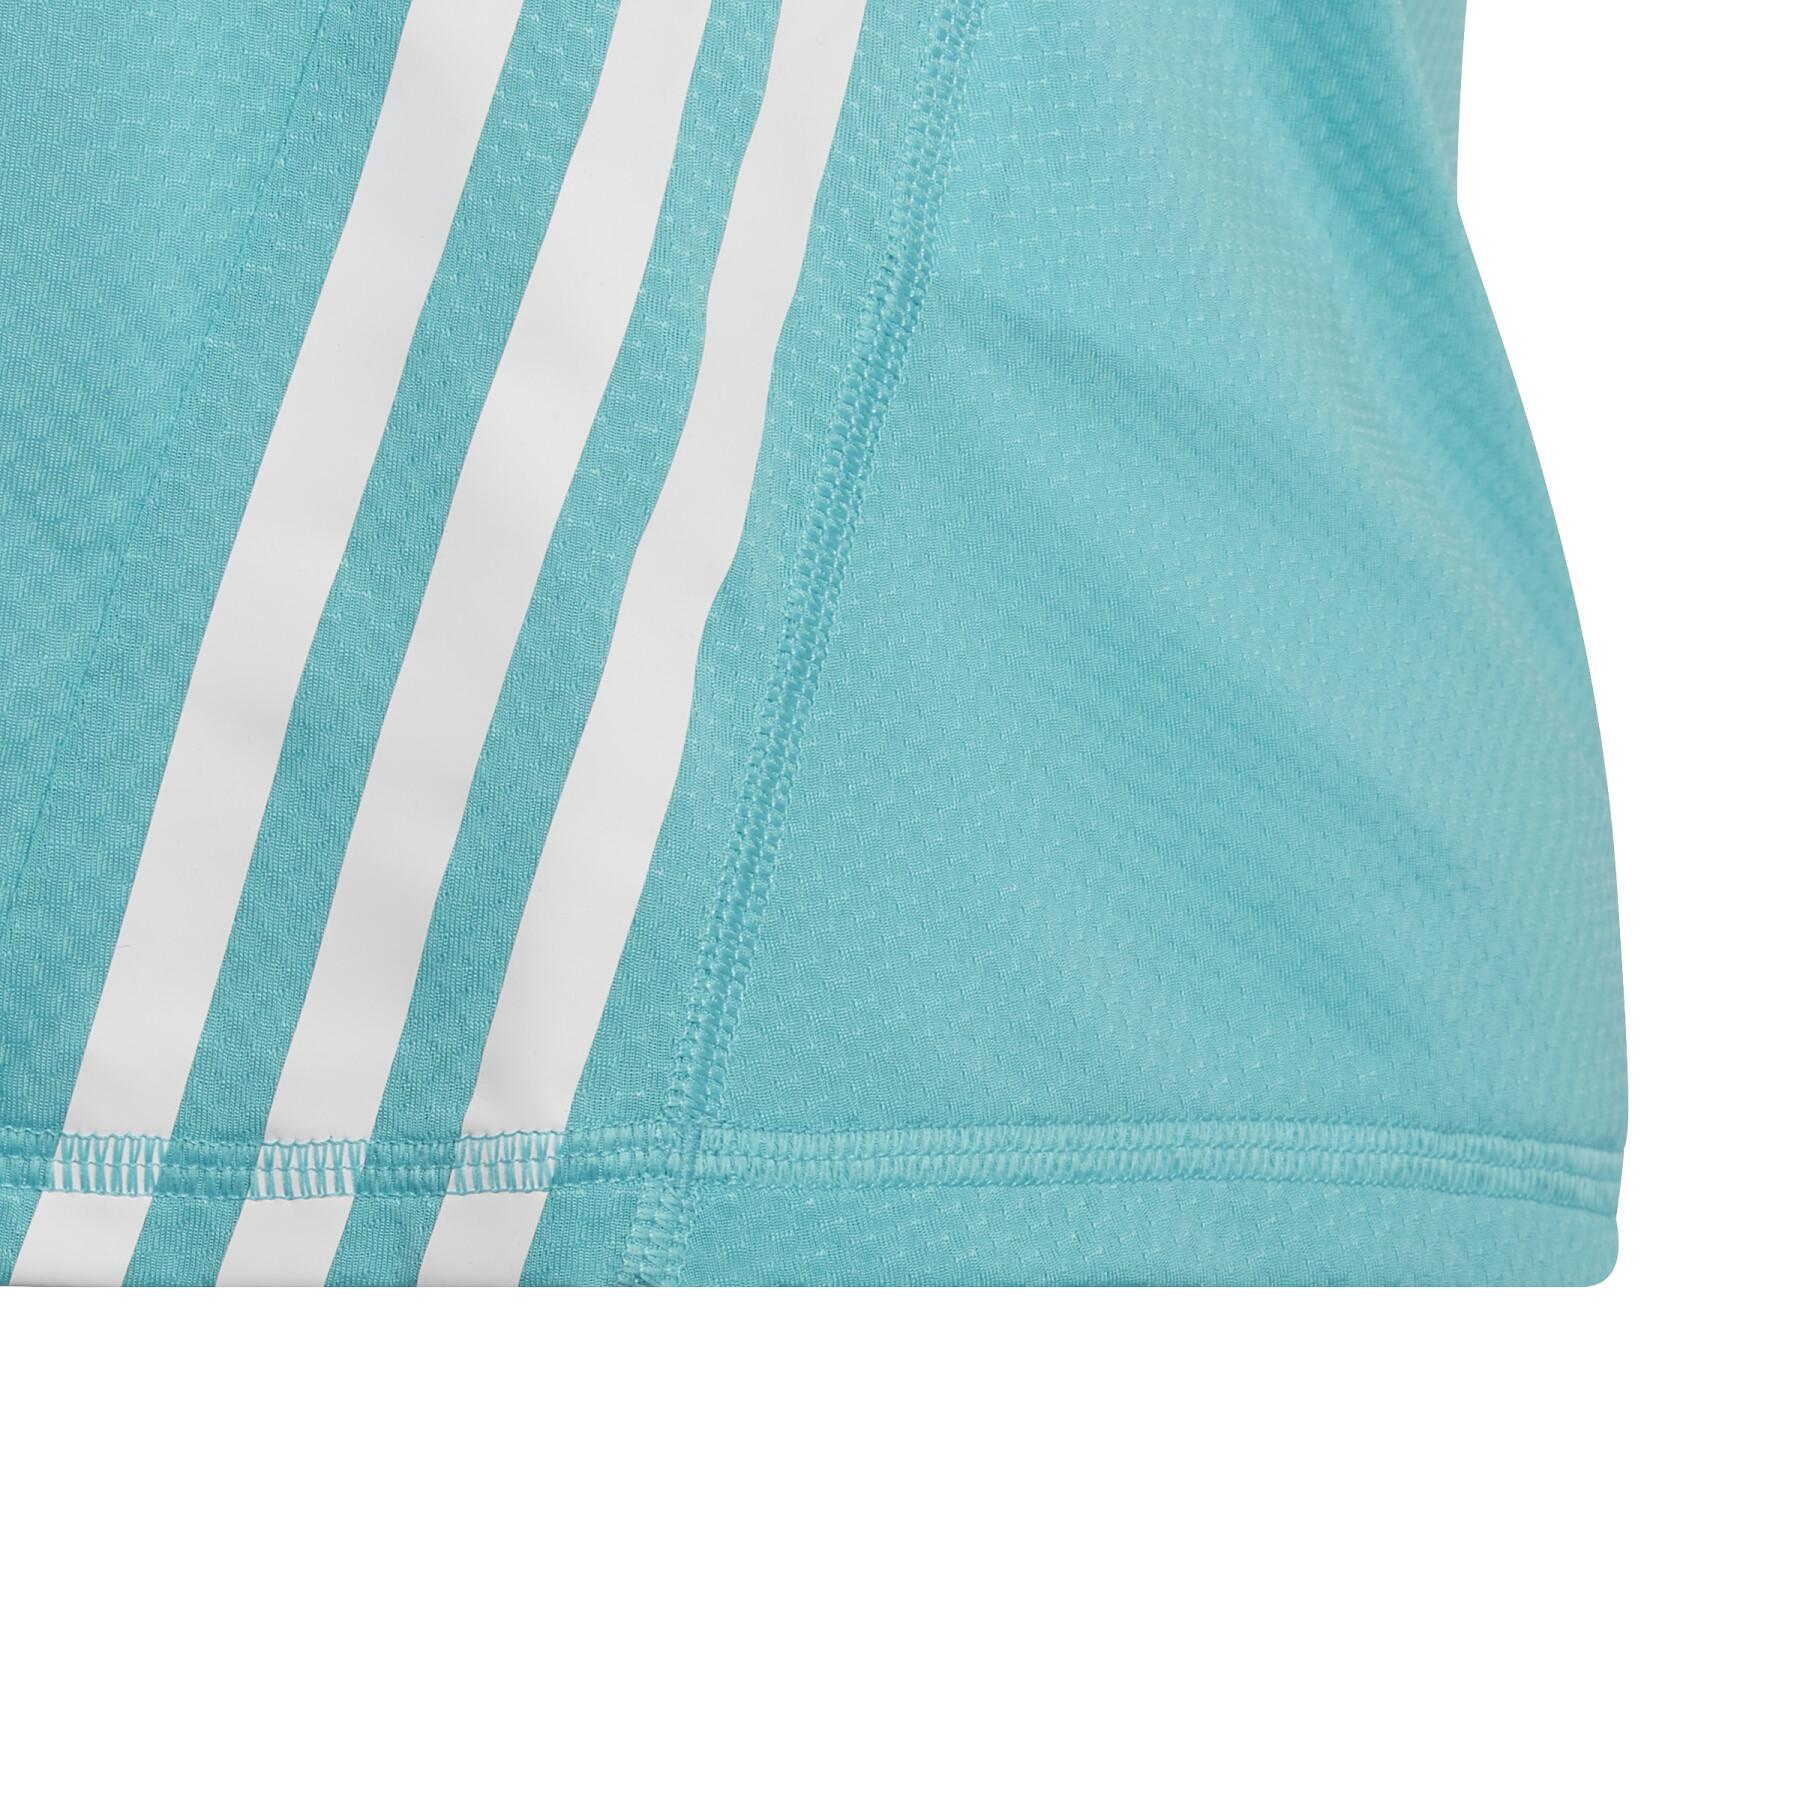 Camiseta de chica adidas Aeroready 3-Stripes